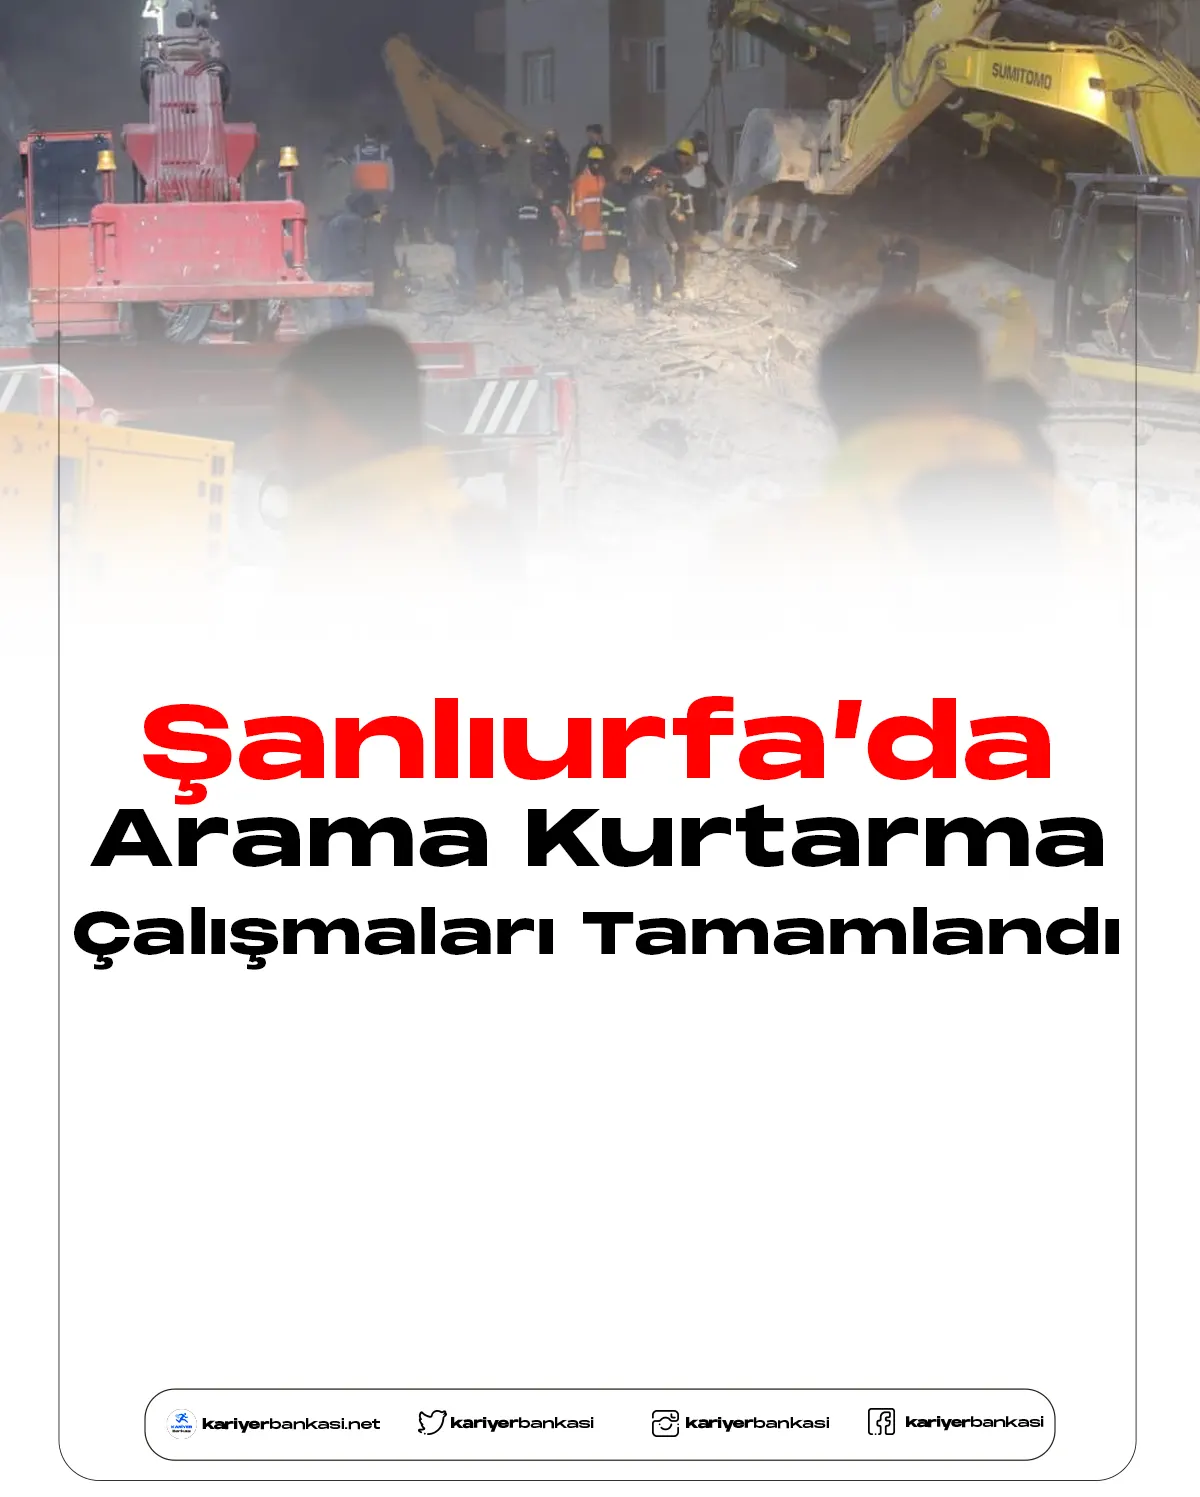 AFAD Şanlıurfa'daki arama kurtarma çalışmalarını tamamlandığını açıkladı.